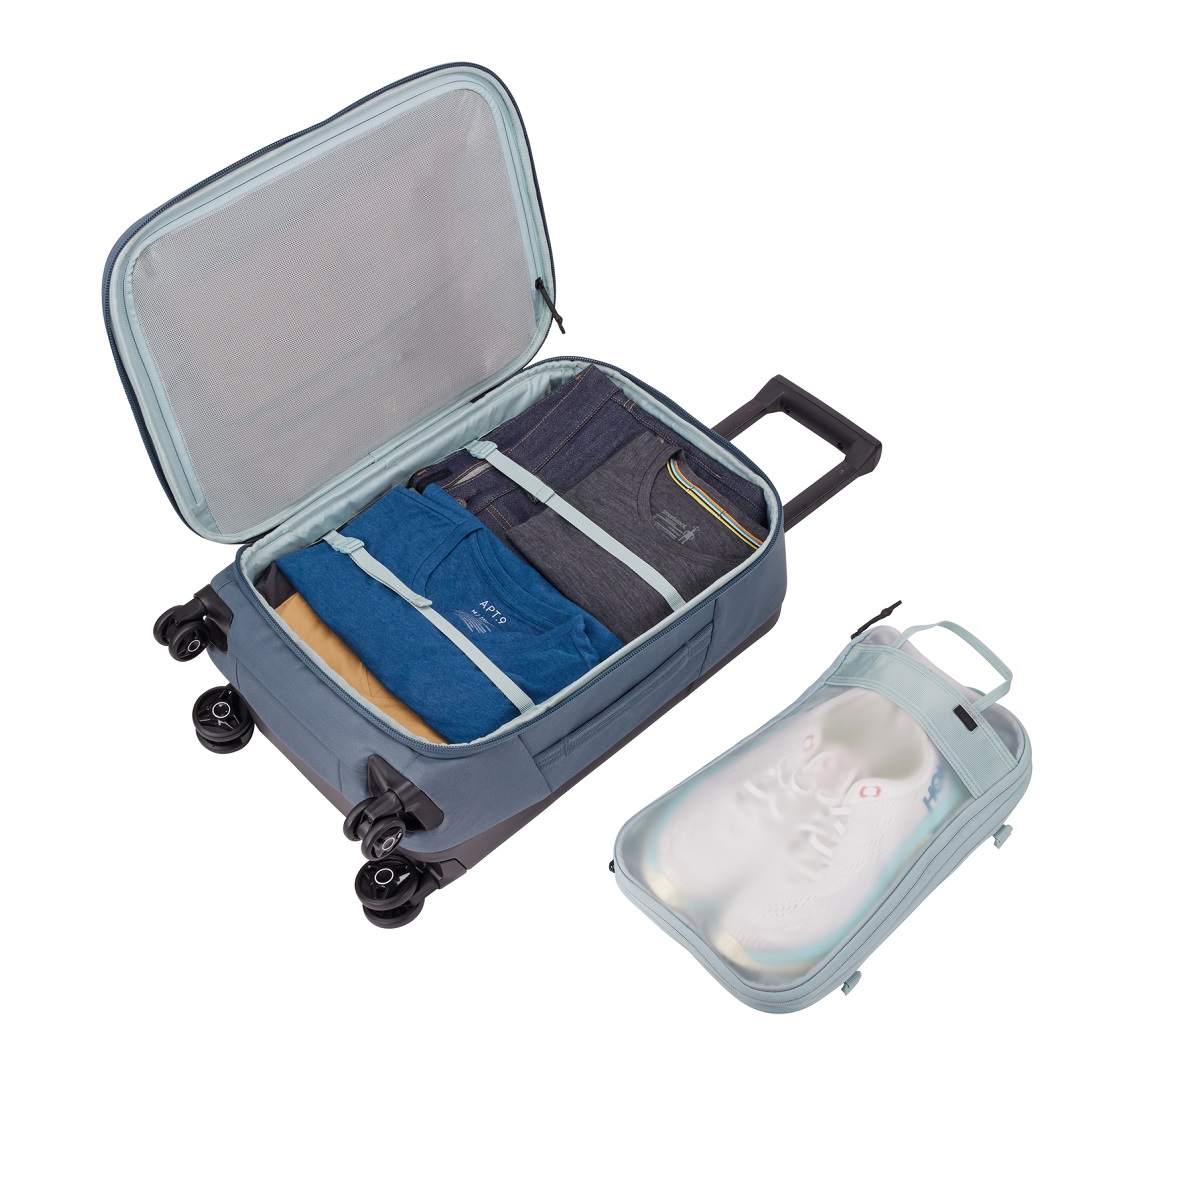 Thule Aion putna torba s kotačima za unos ručne prtljage u zrakoplov plava